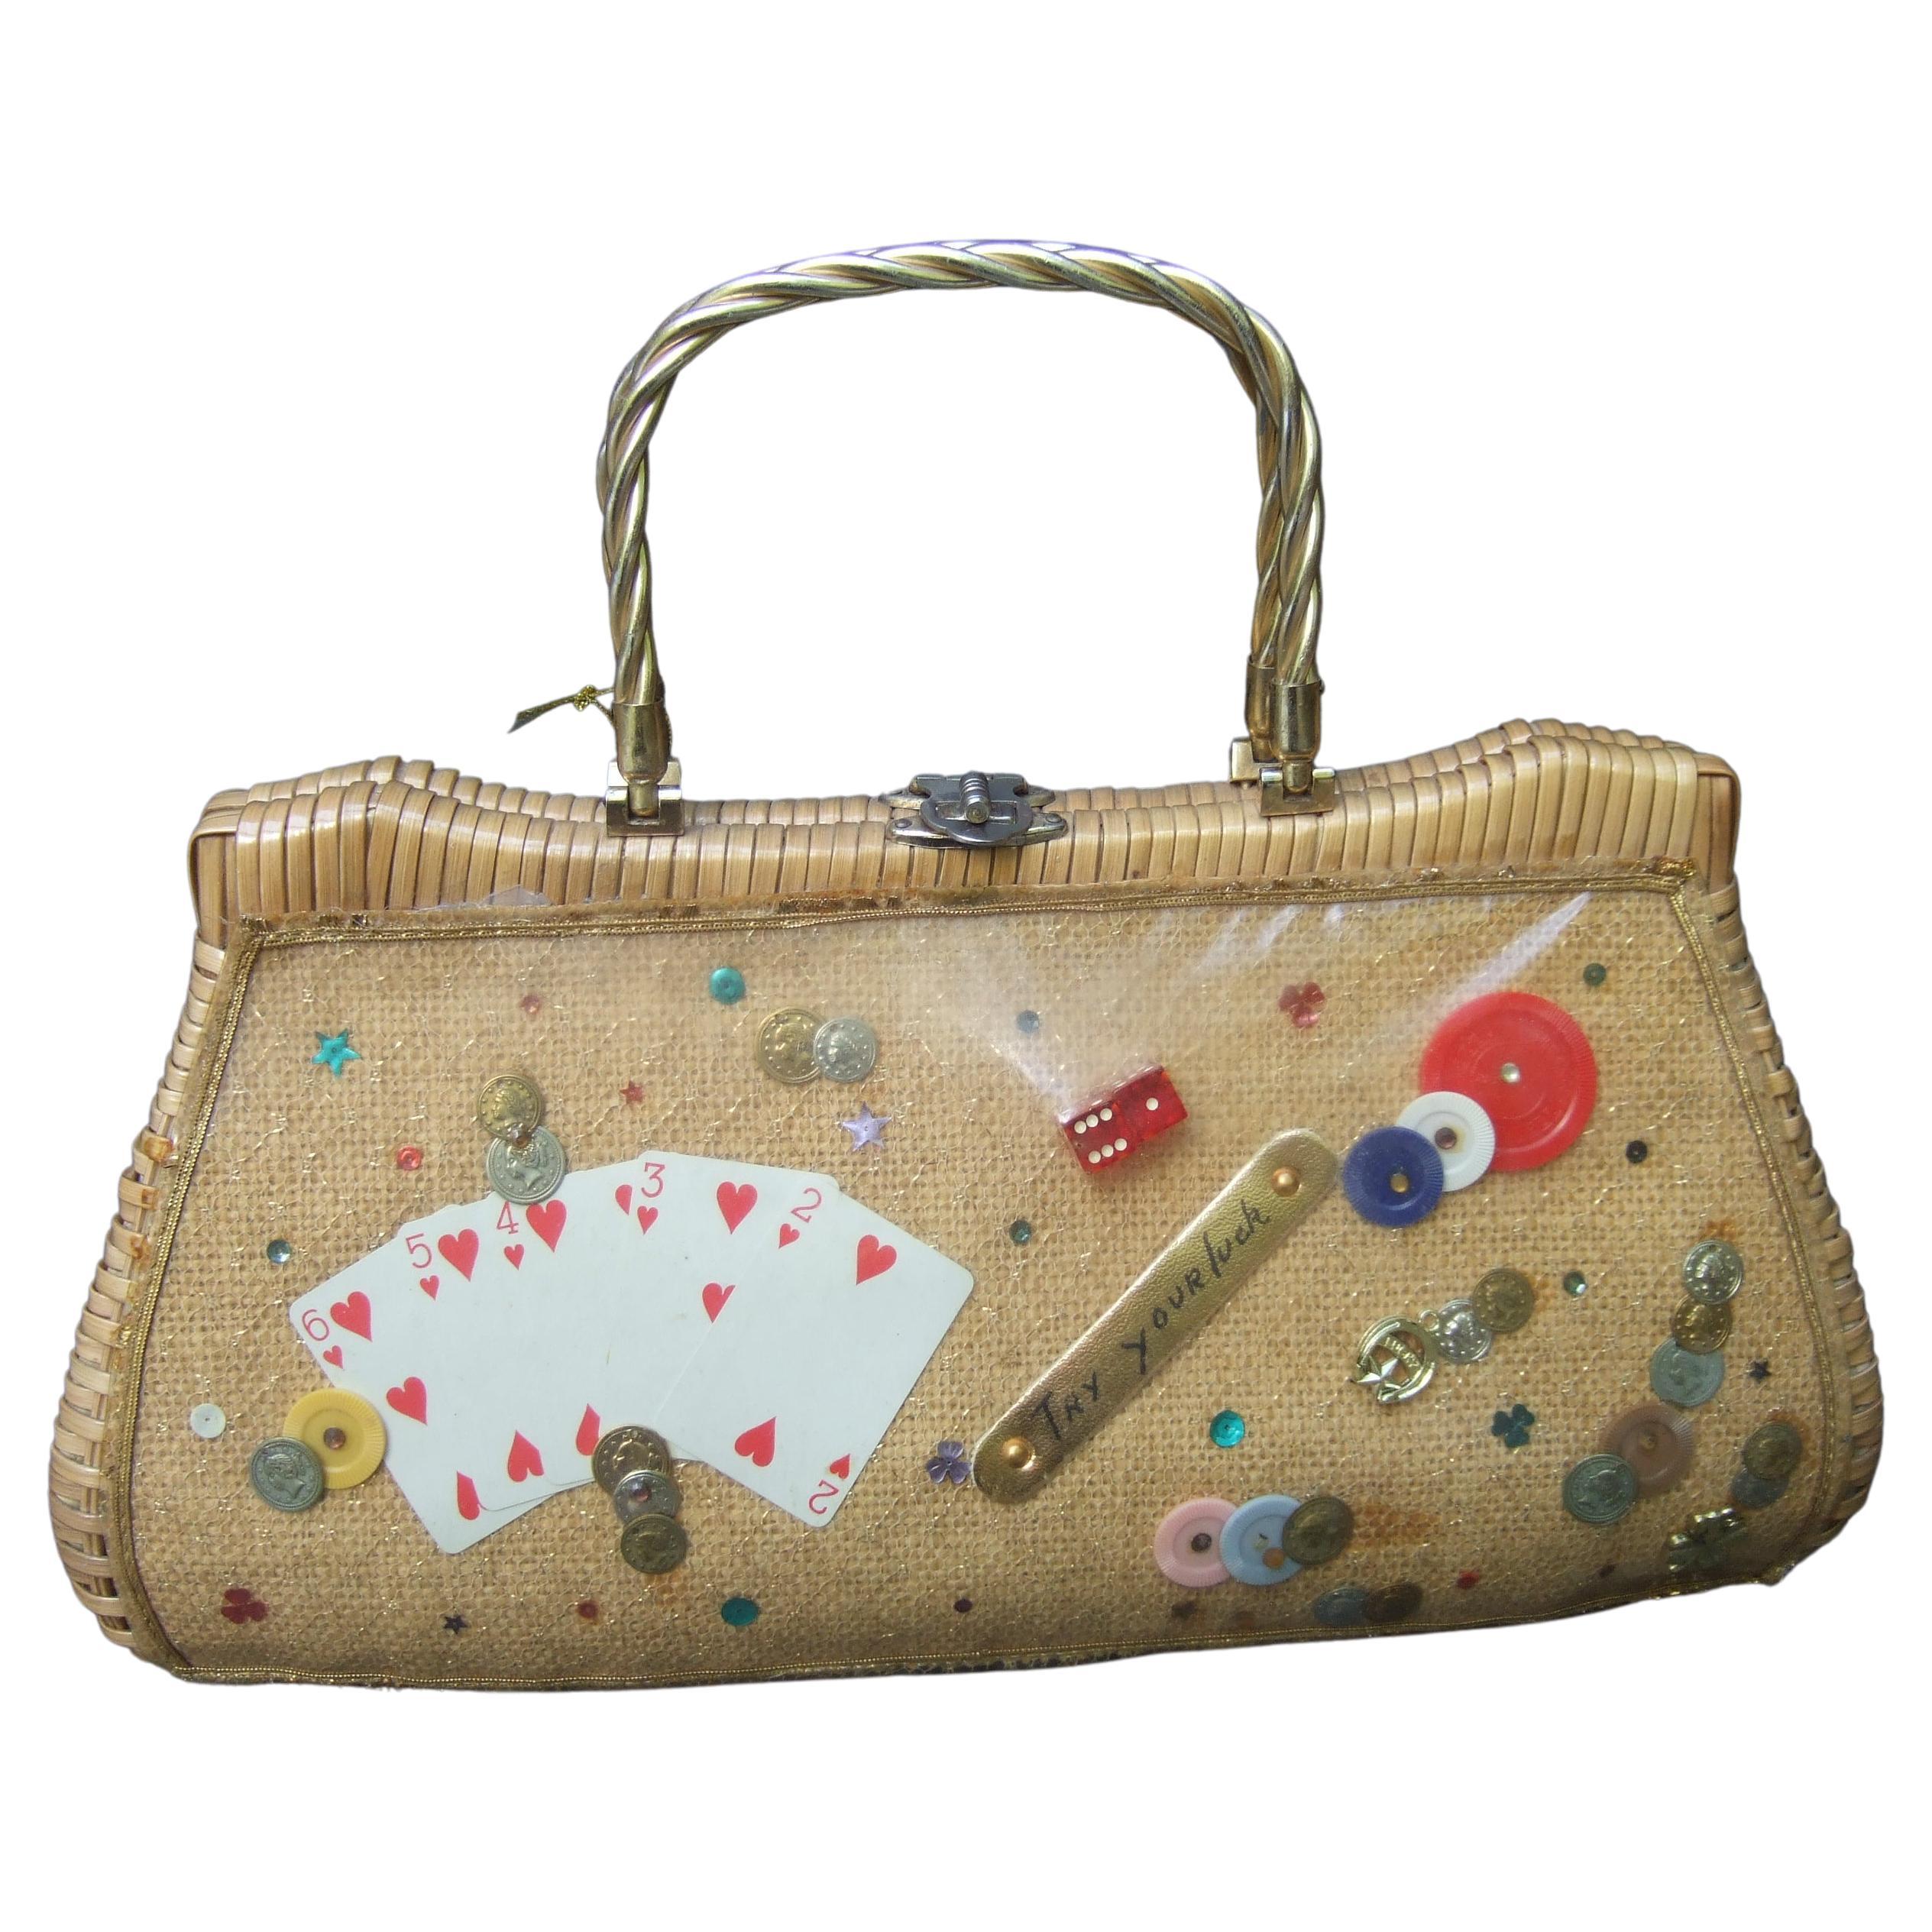 Whimsical Gambling Themed Woven Wicker Retro Handbag c 1960s